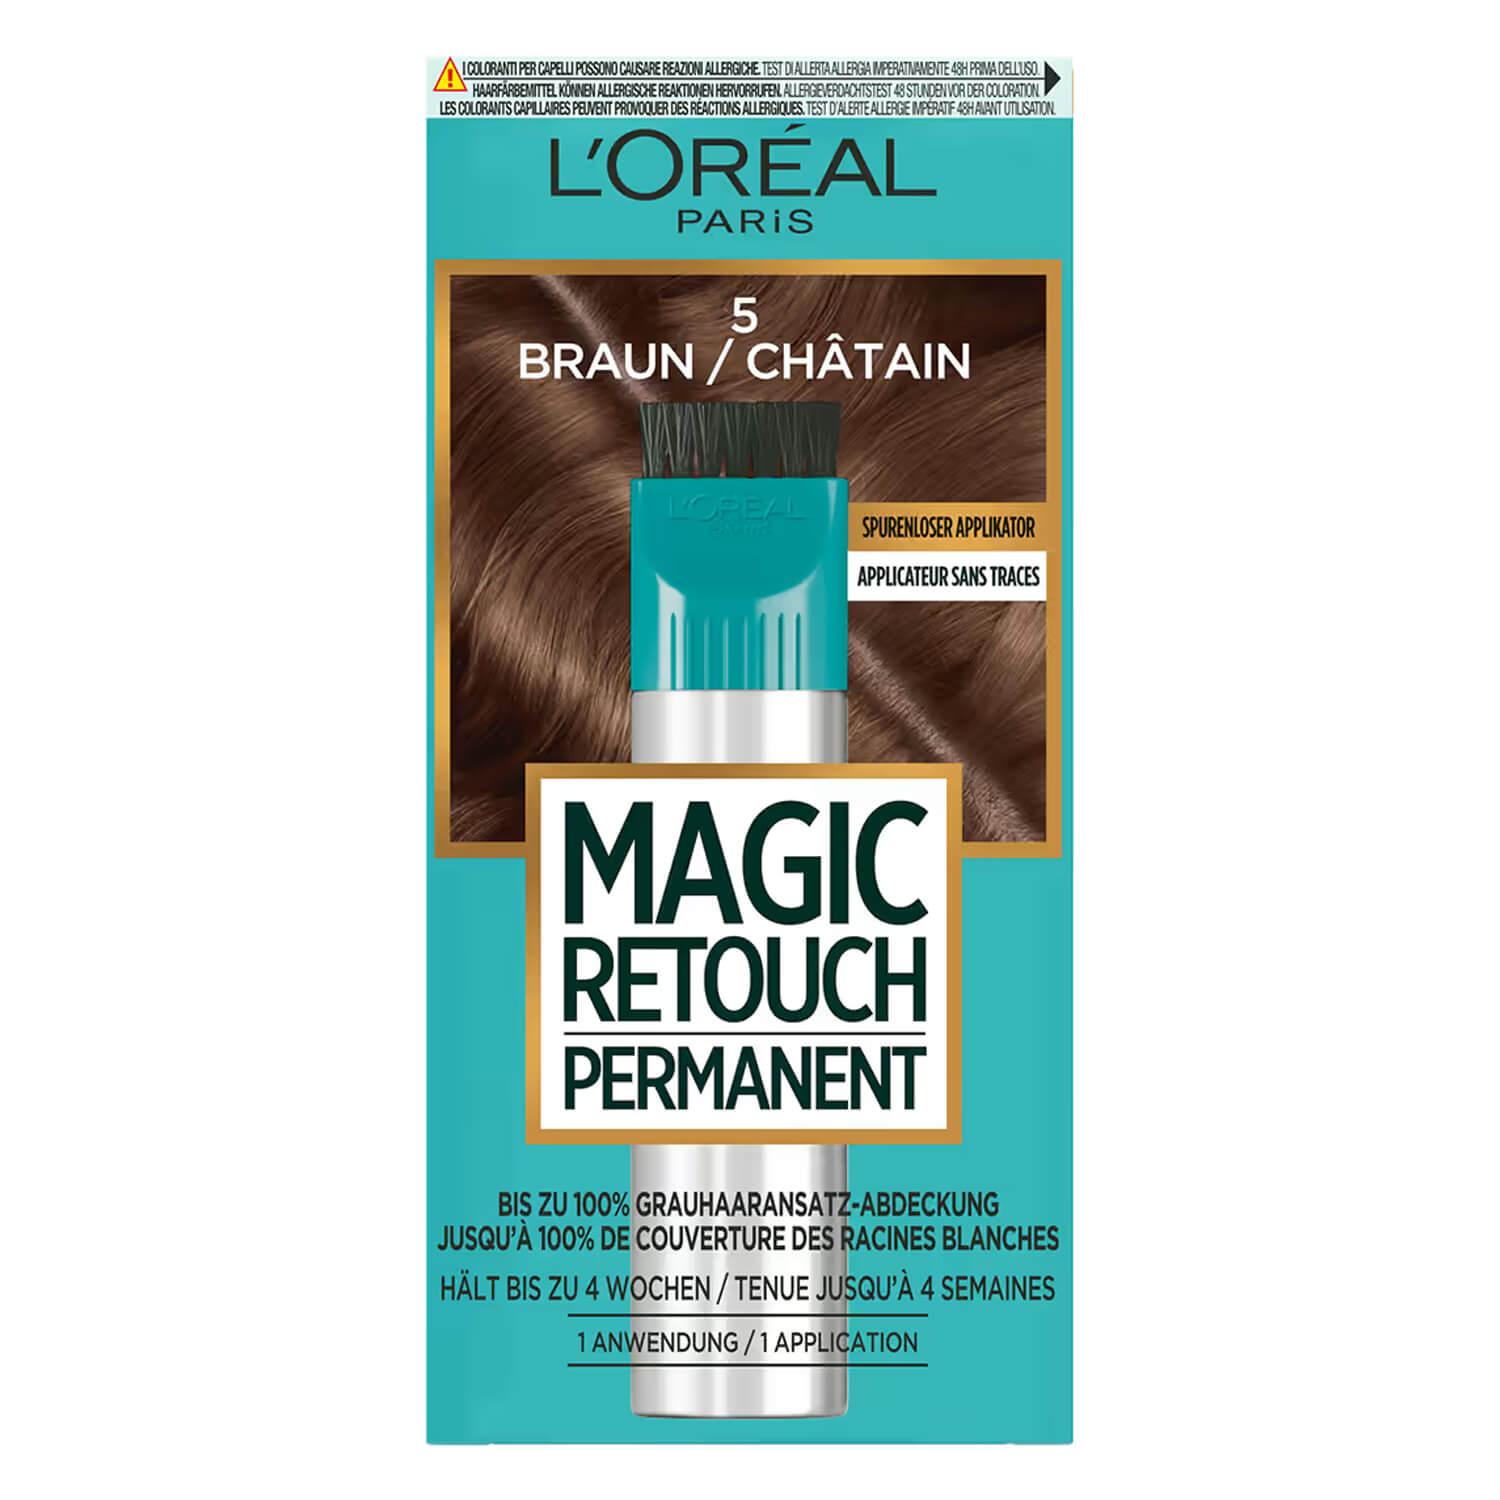 LOréal Magic Retouch - Permanent Braun